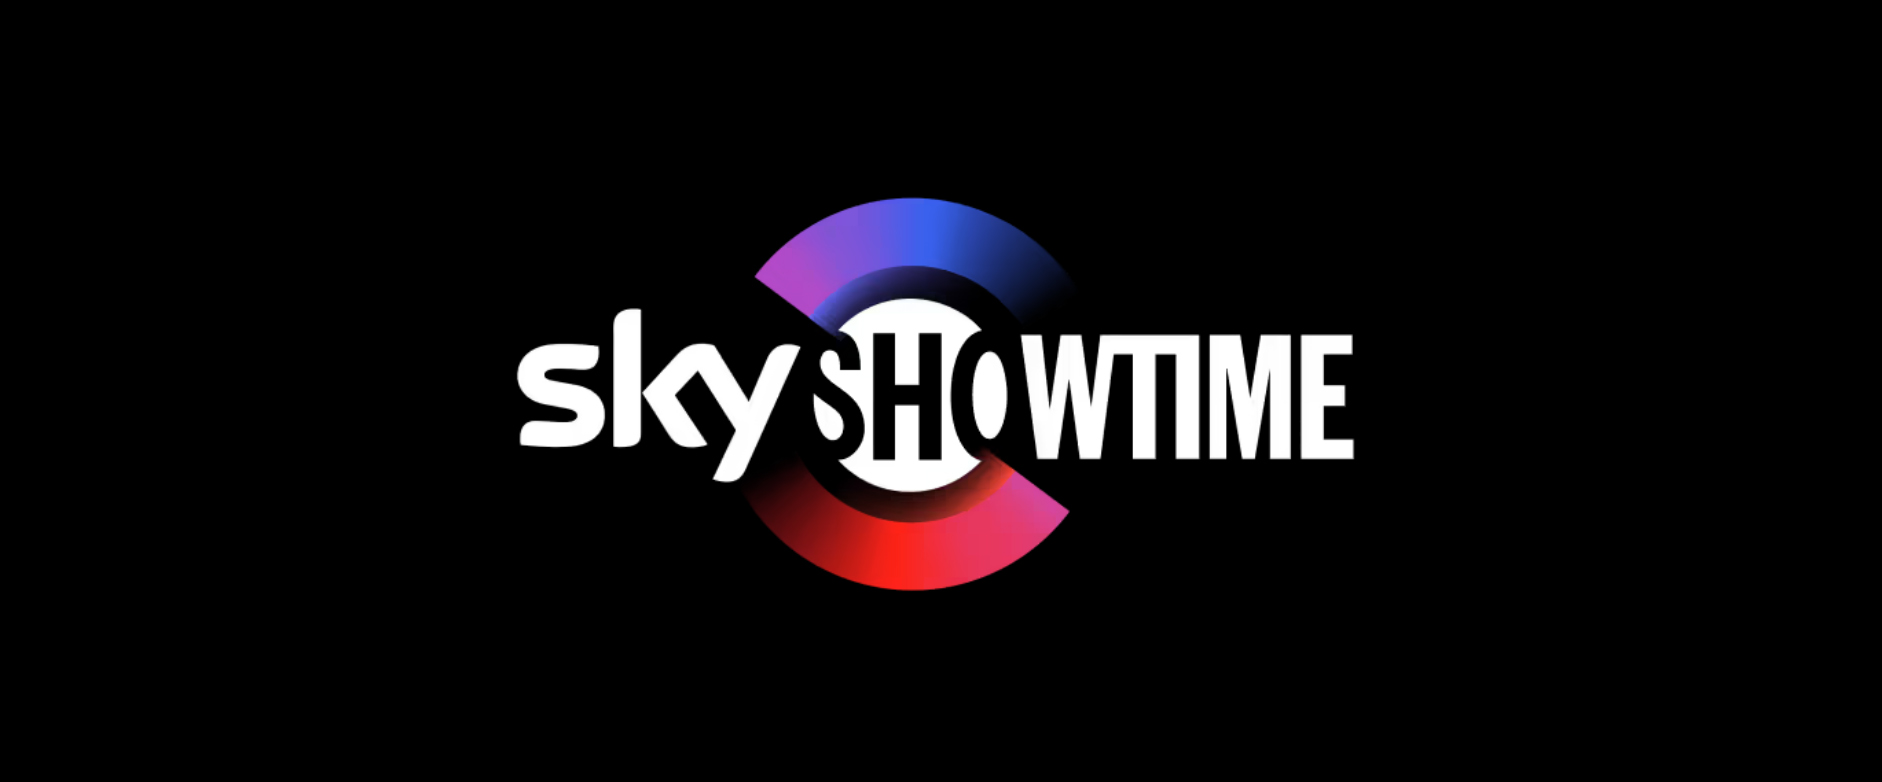 SkyShowtime lanzará un plan de suscripción con anuncios